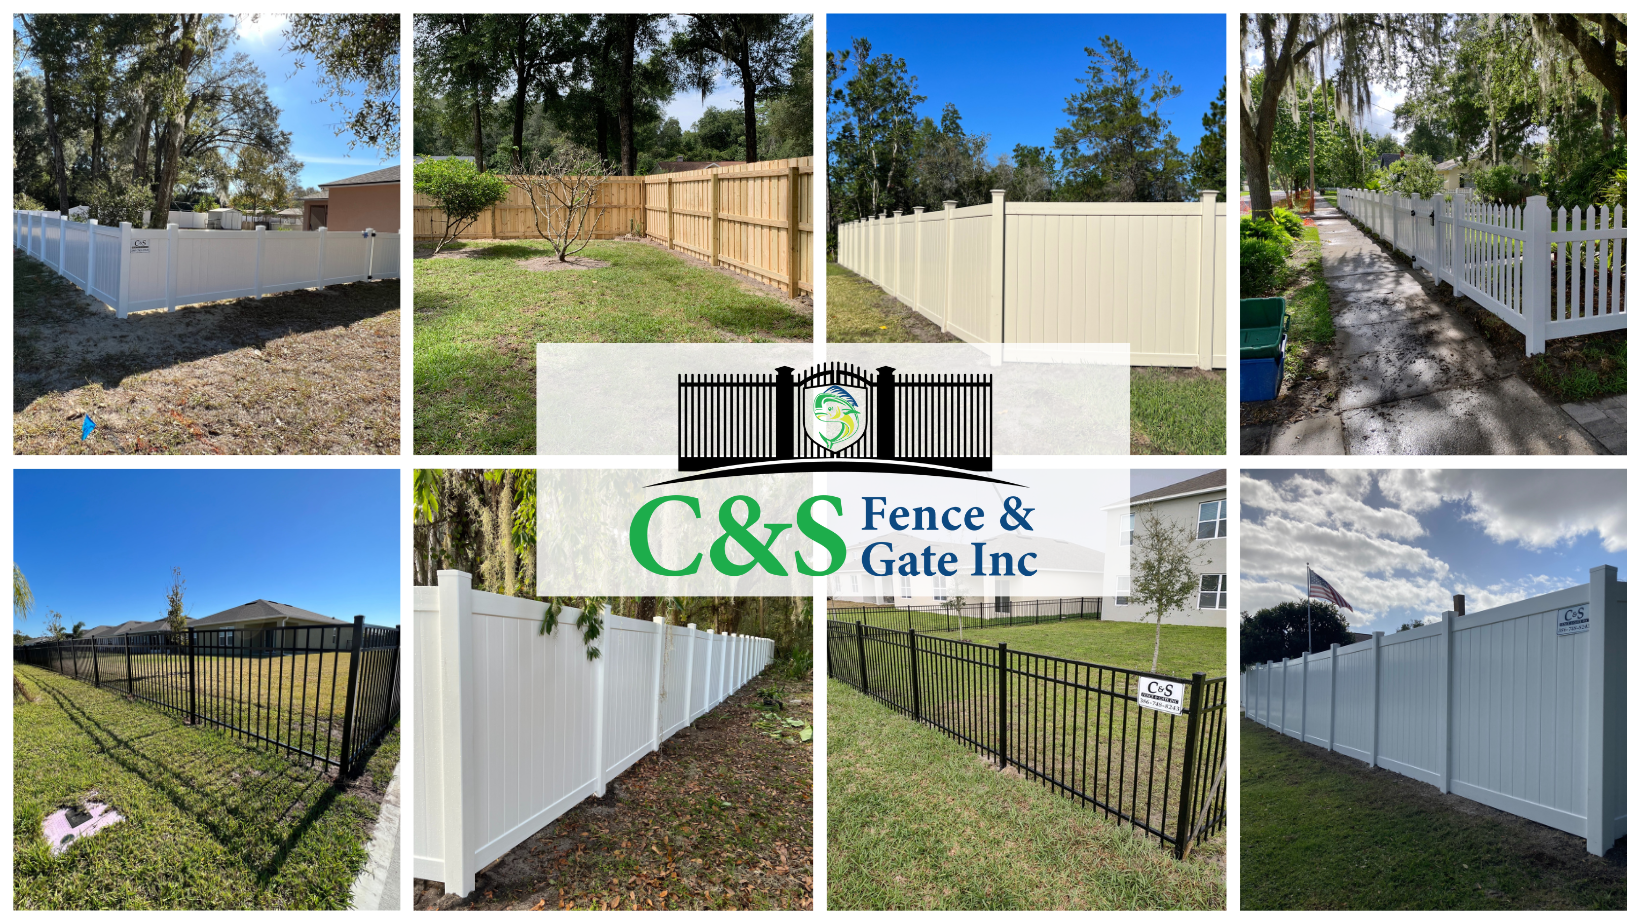 C & S Fence & Gate Inc. 555 Emporia Rd, Pierson Florida 32180